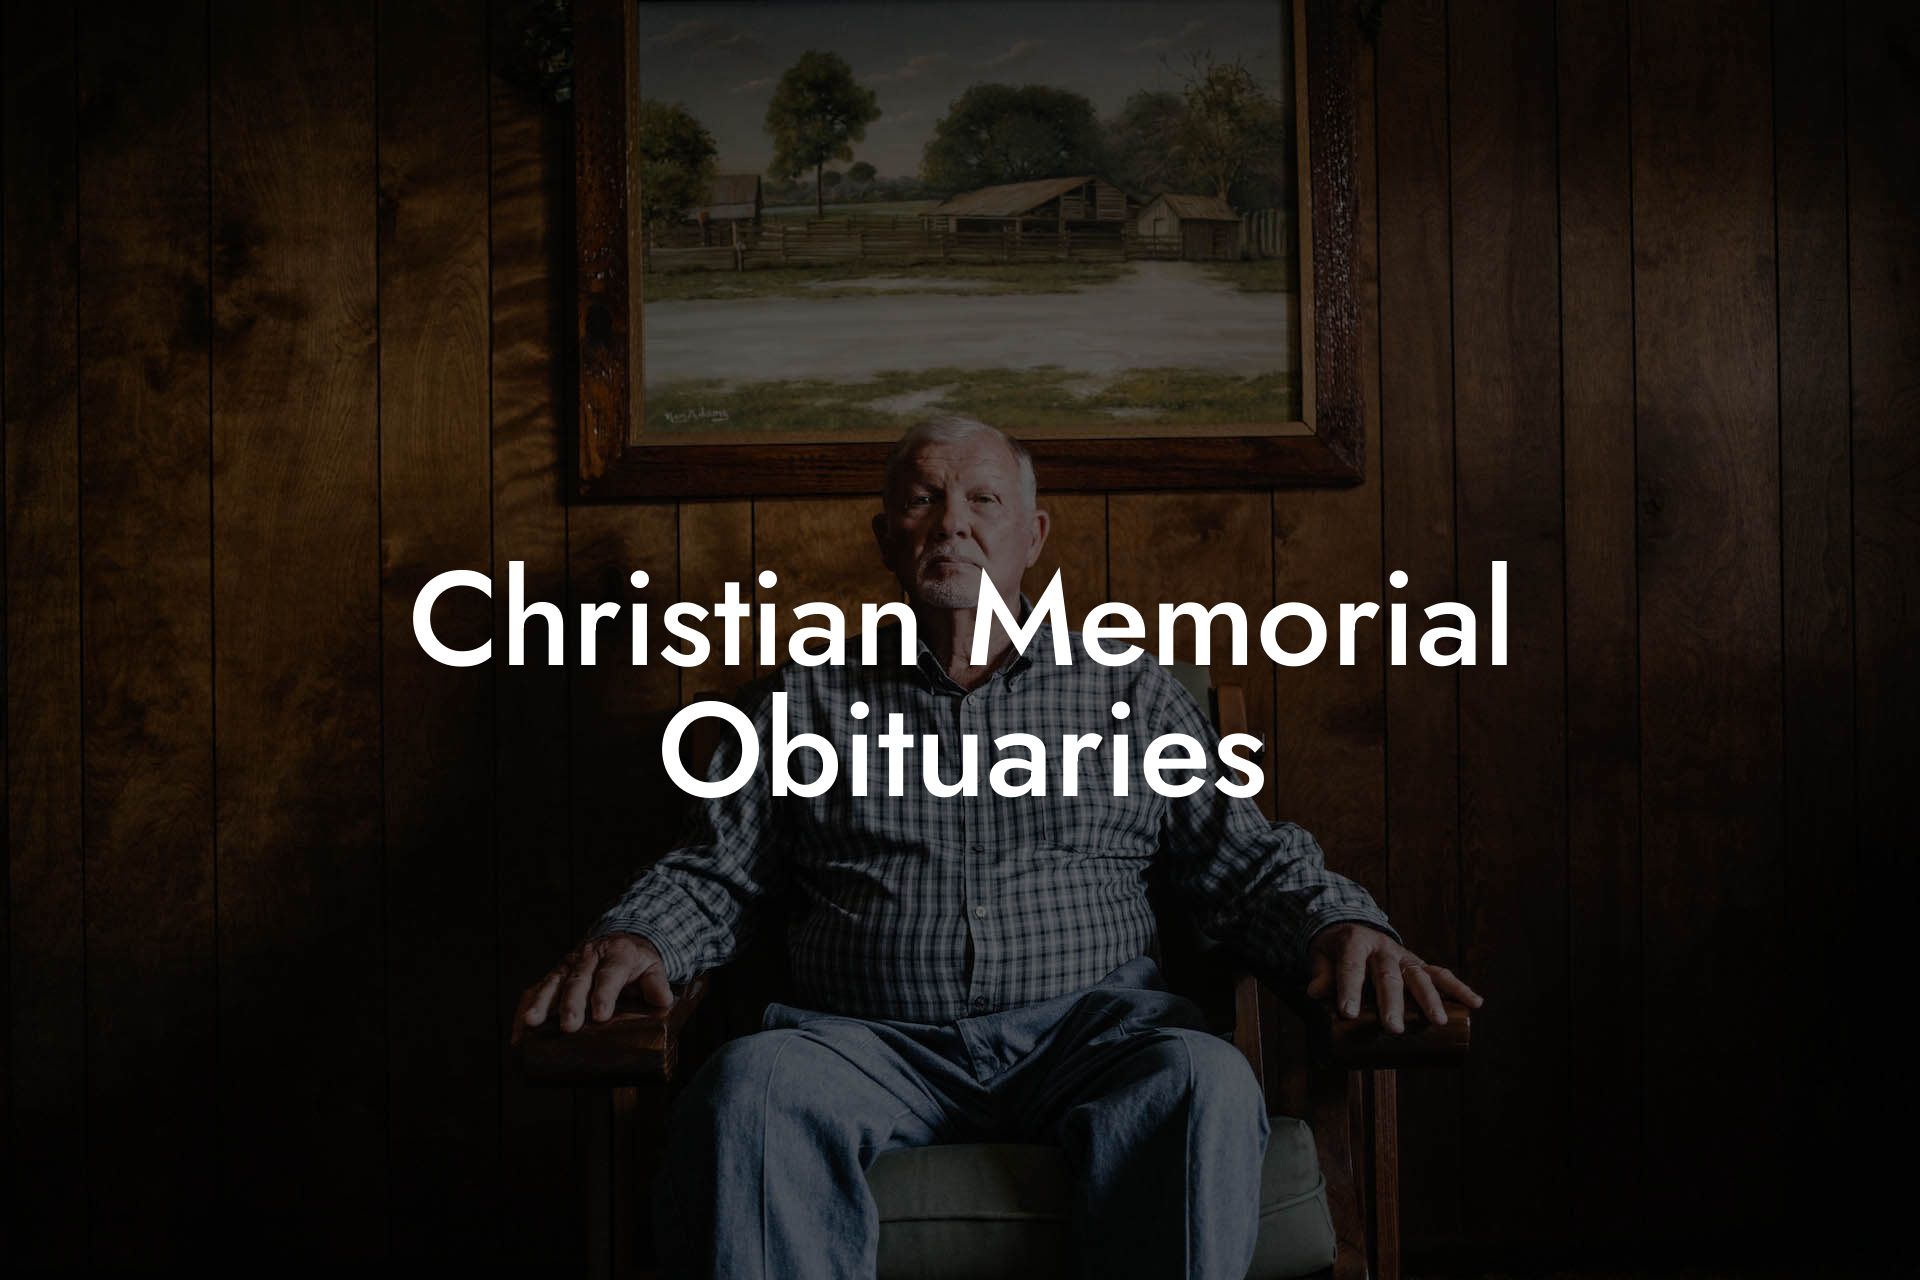 Christian Memorial Obituaries